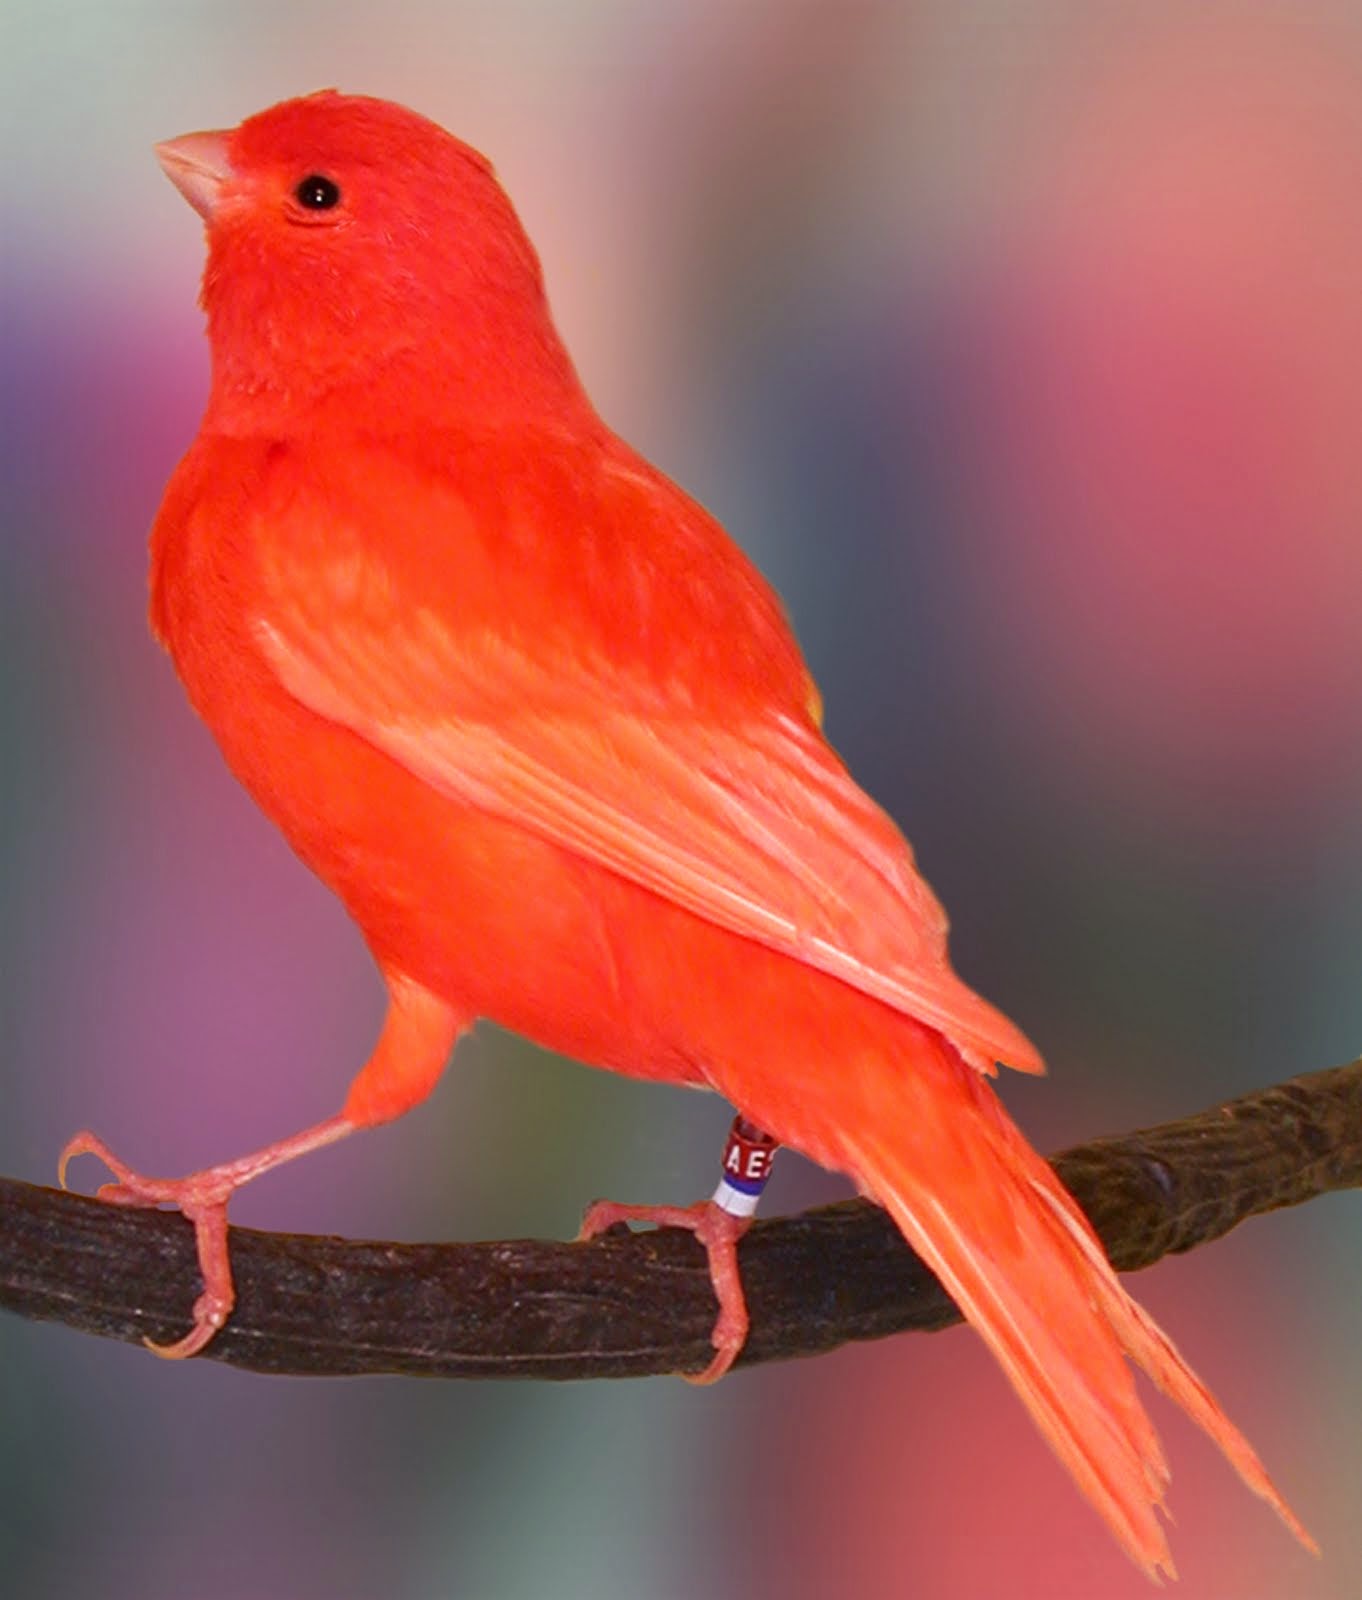 Foto Burung Kenari Red Terbaik